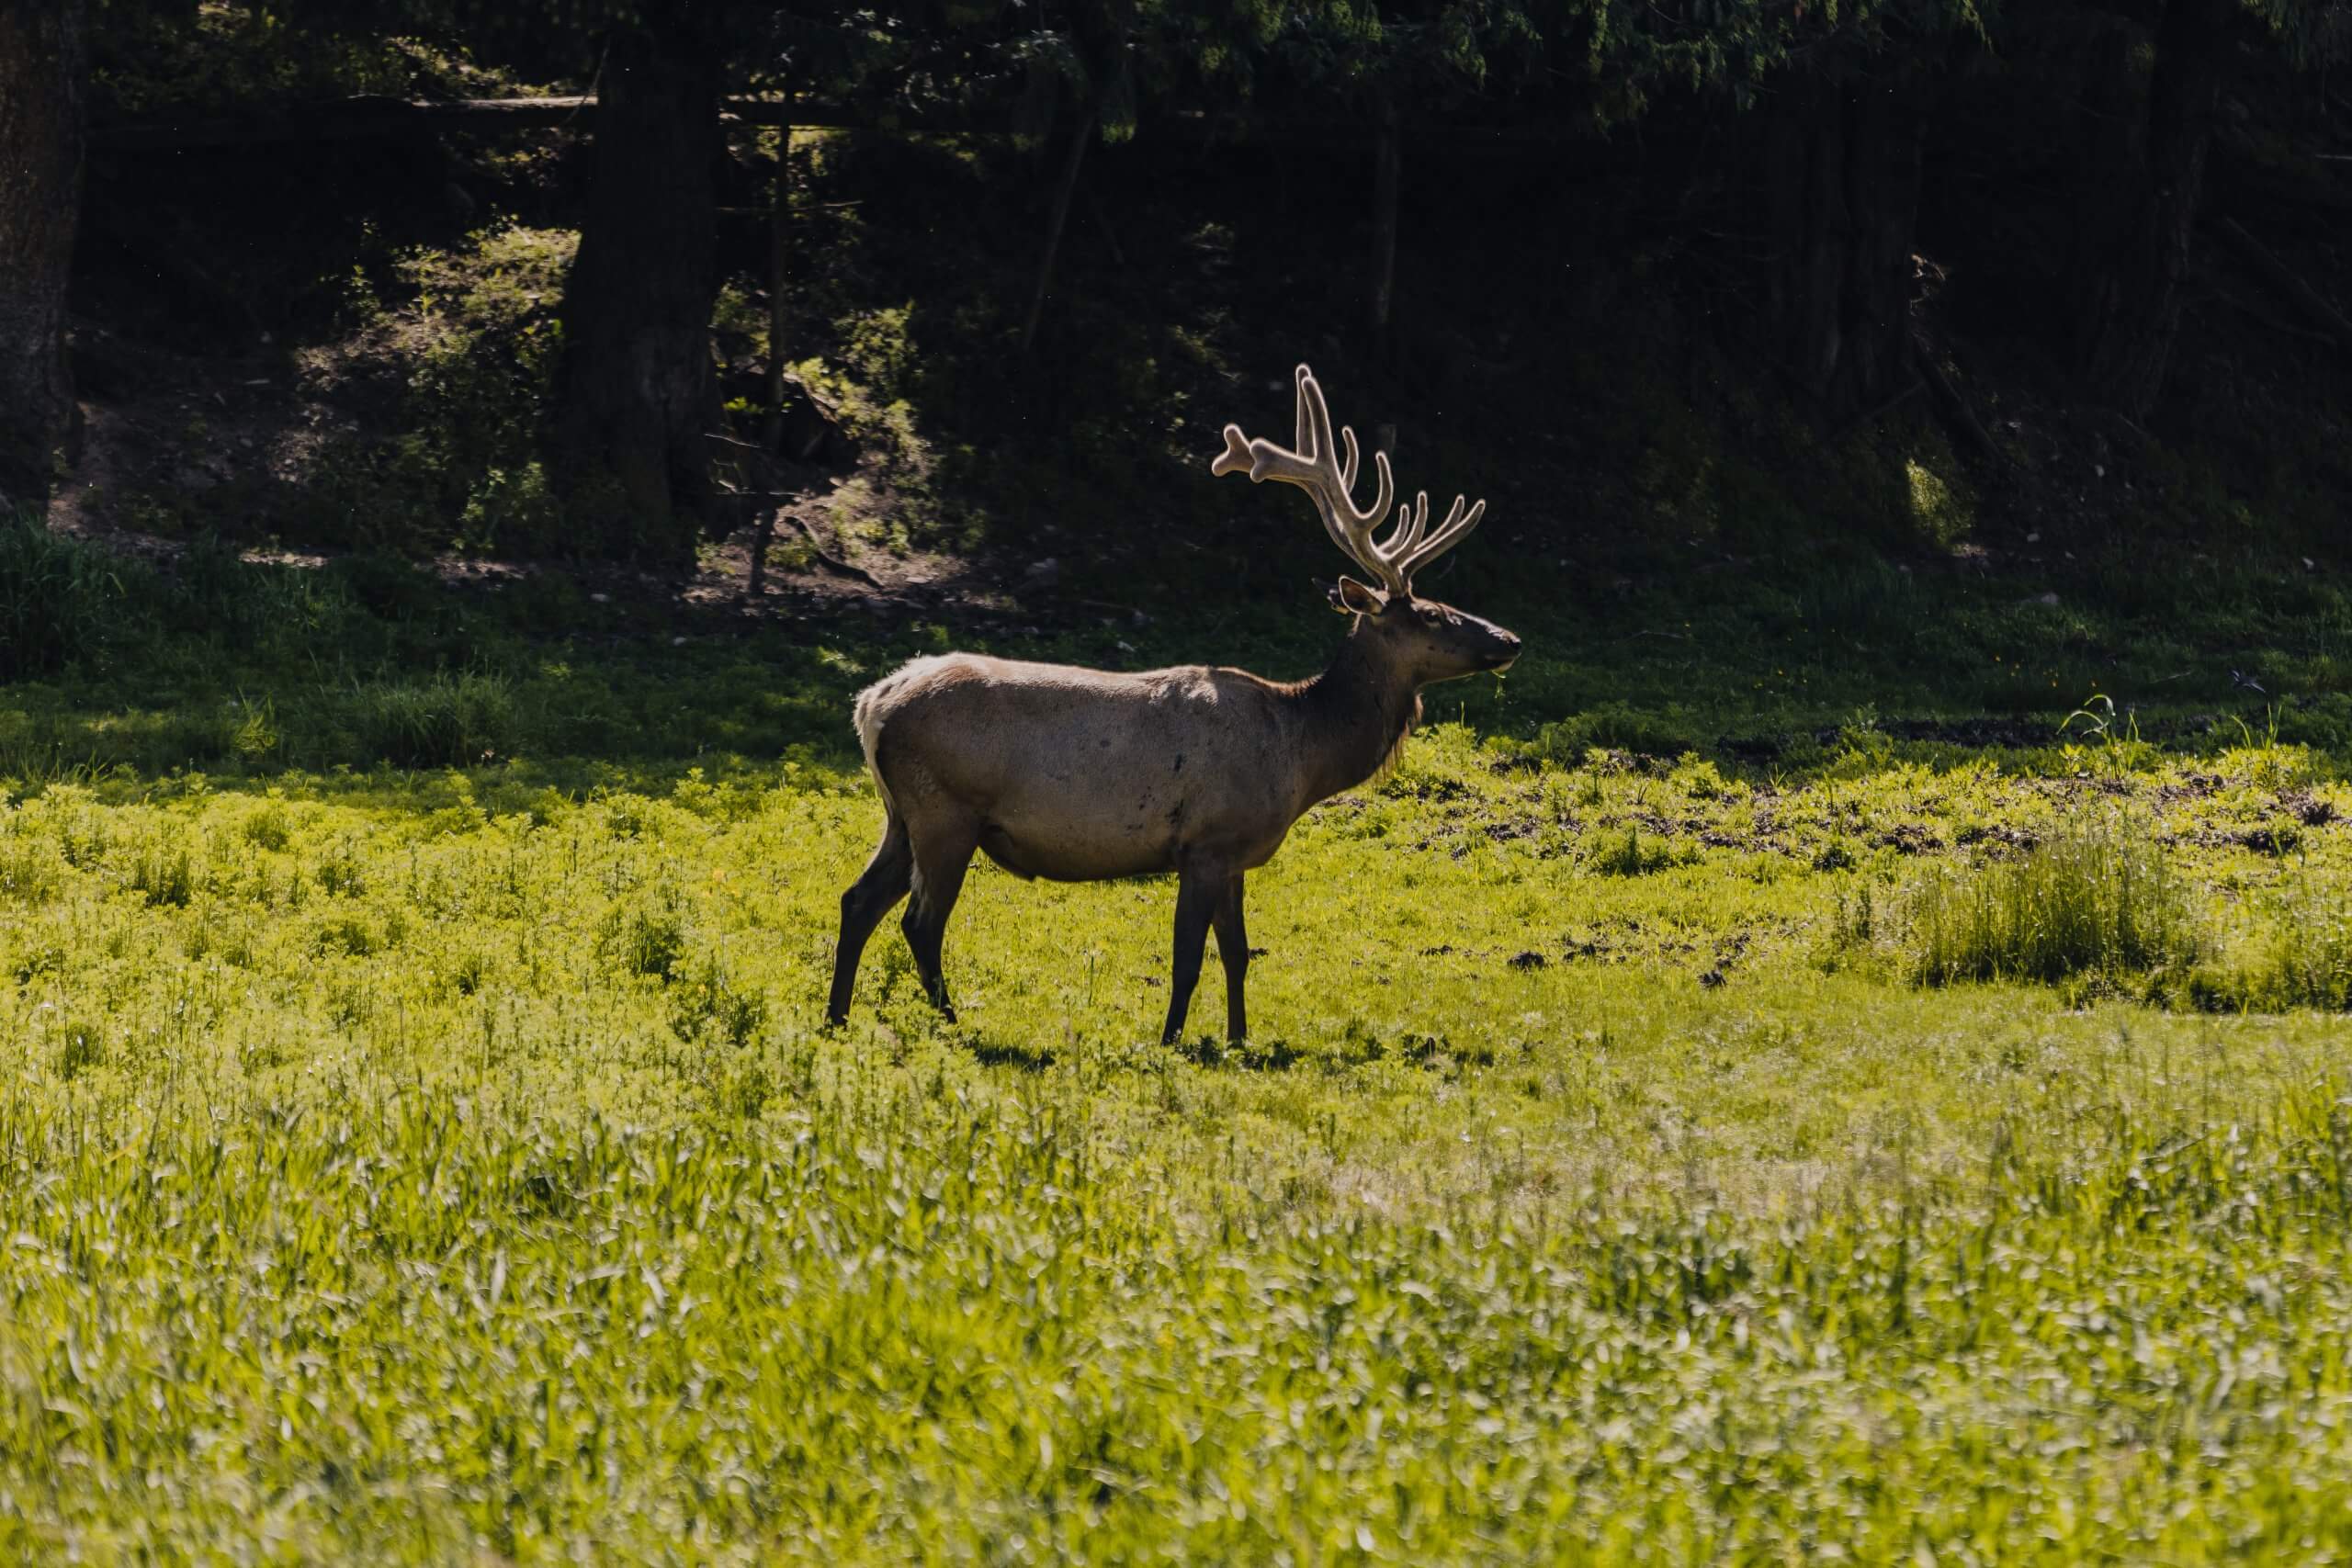 An elk standing in a grassy field.